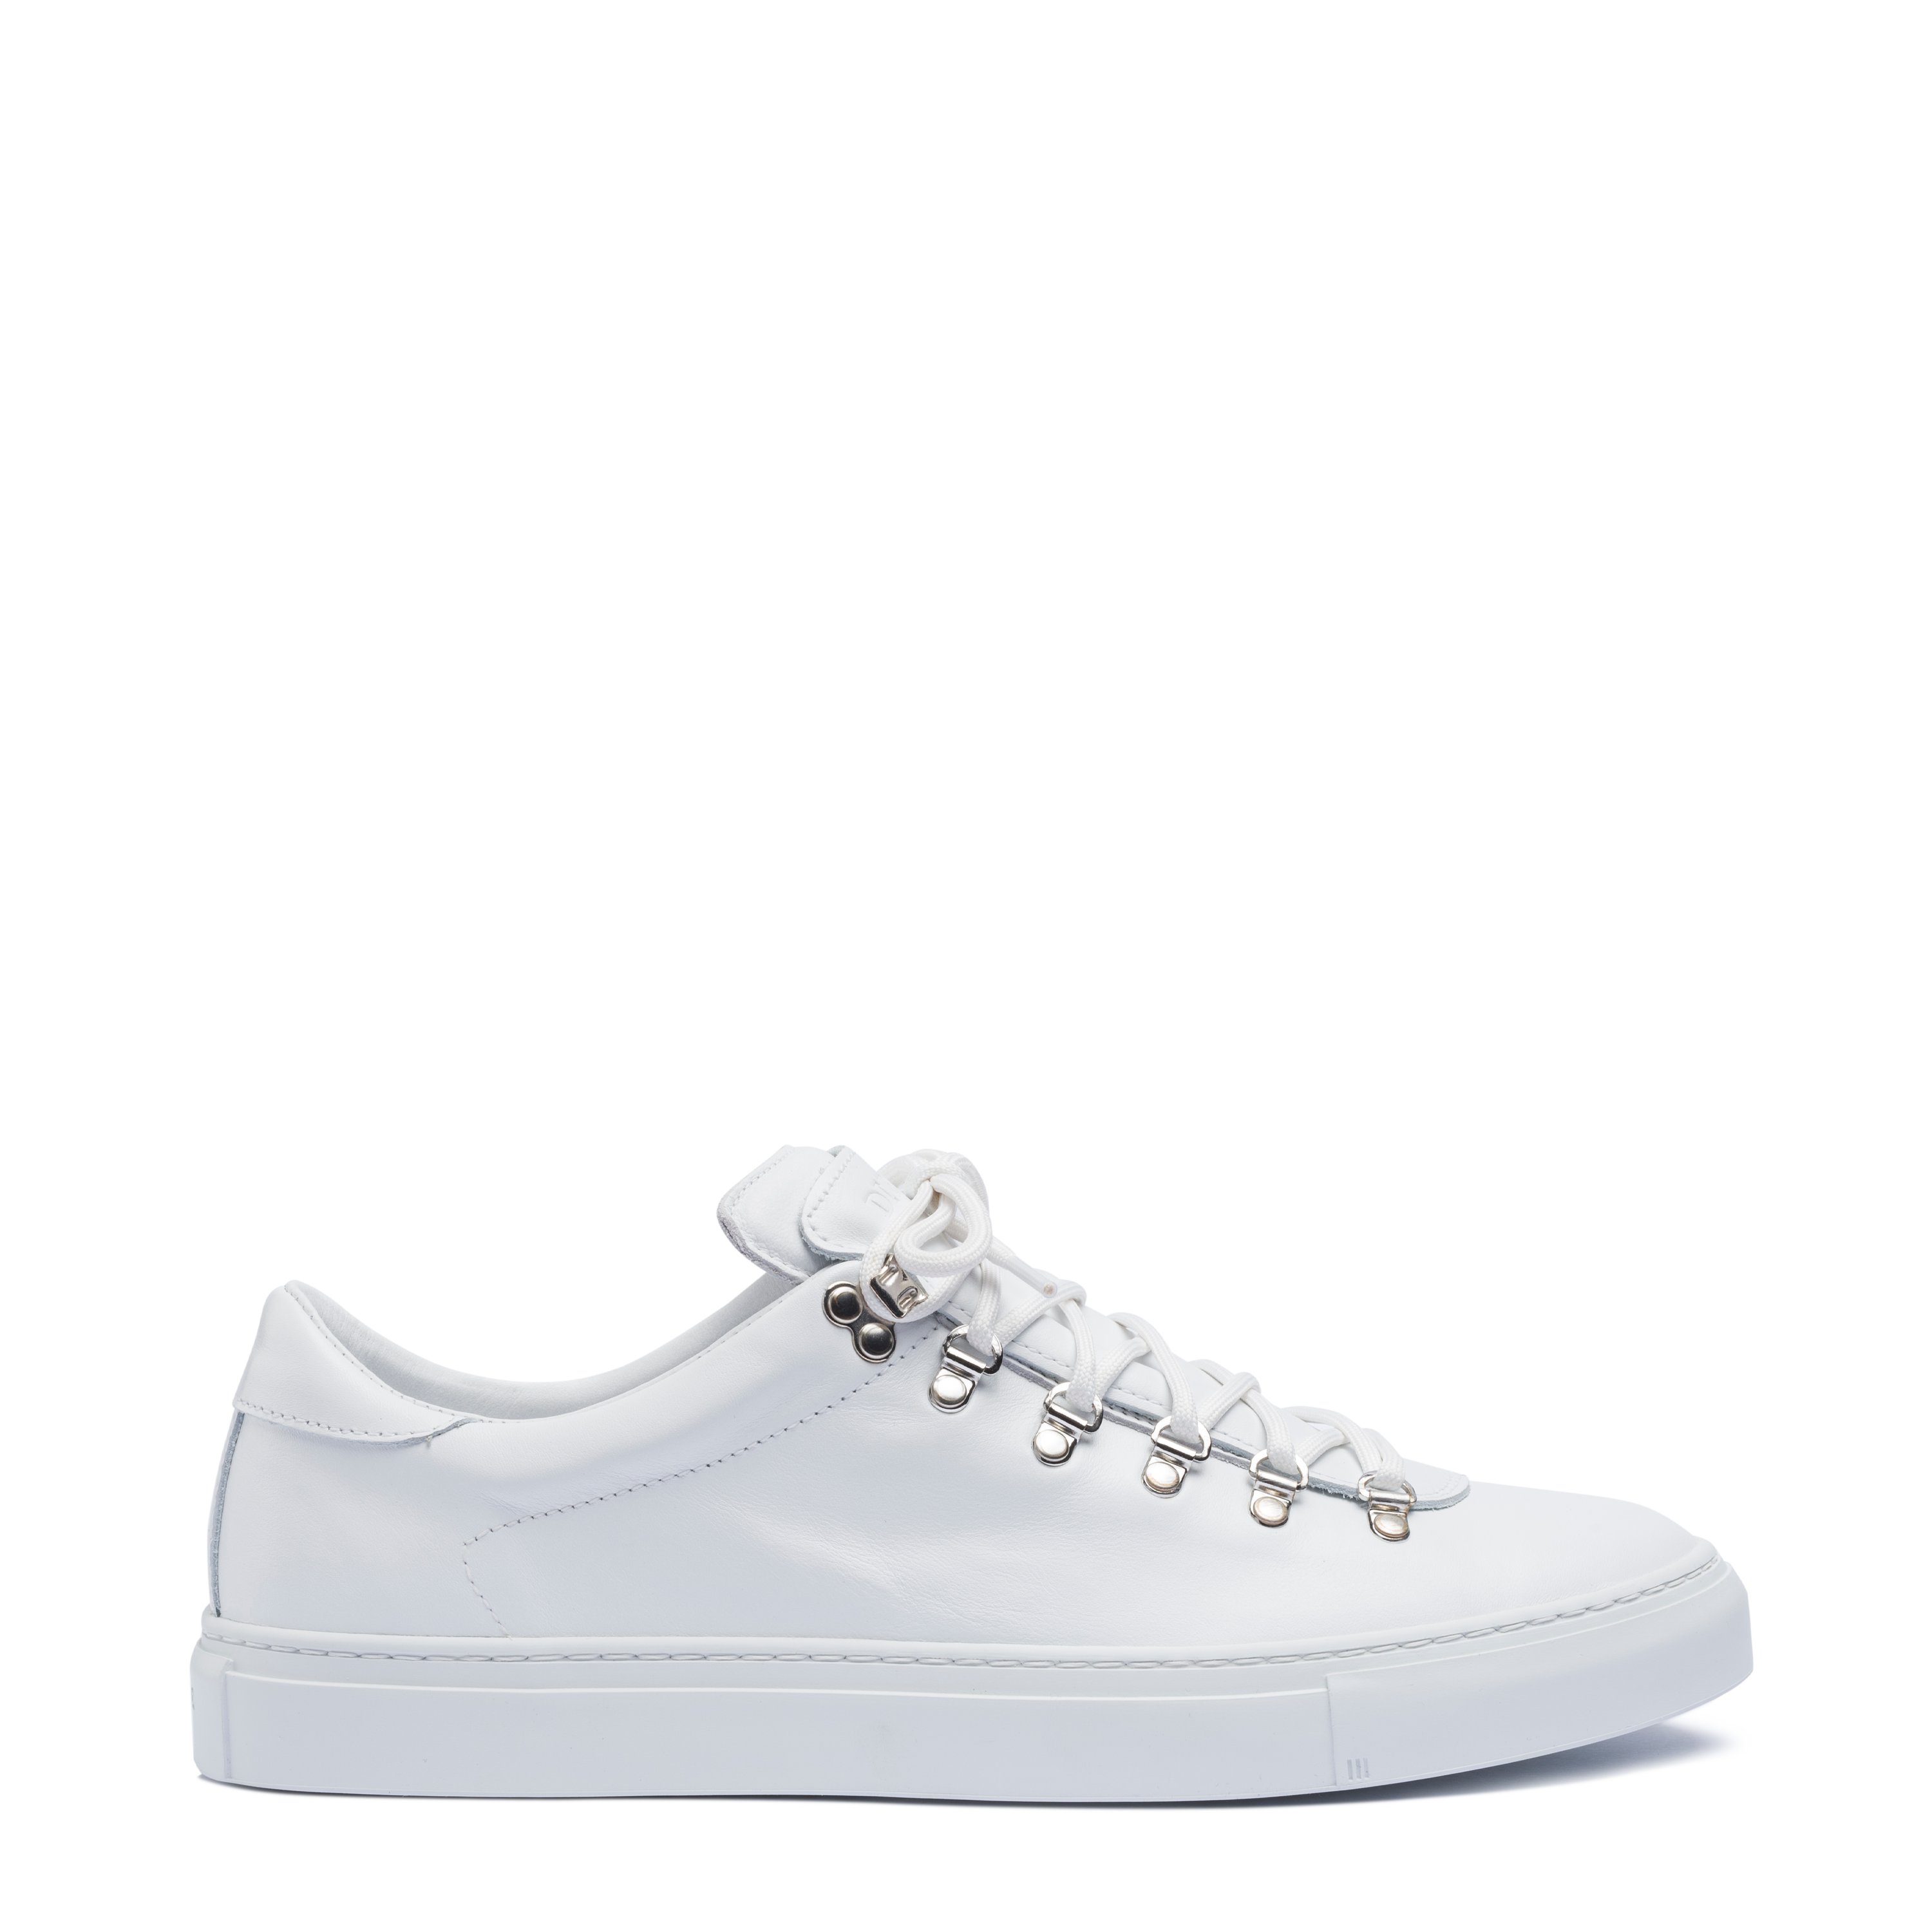 Diemme Footwear - Marostica Low White Nappa M